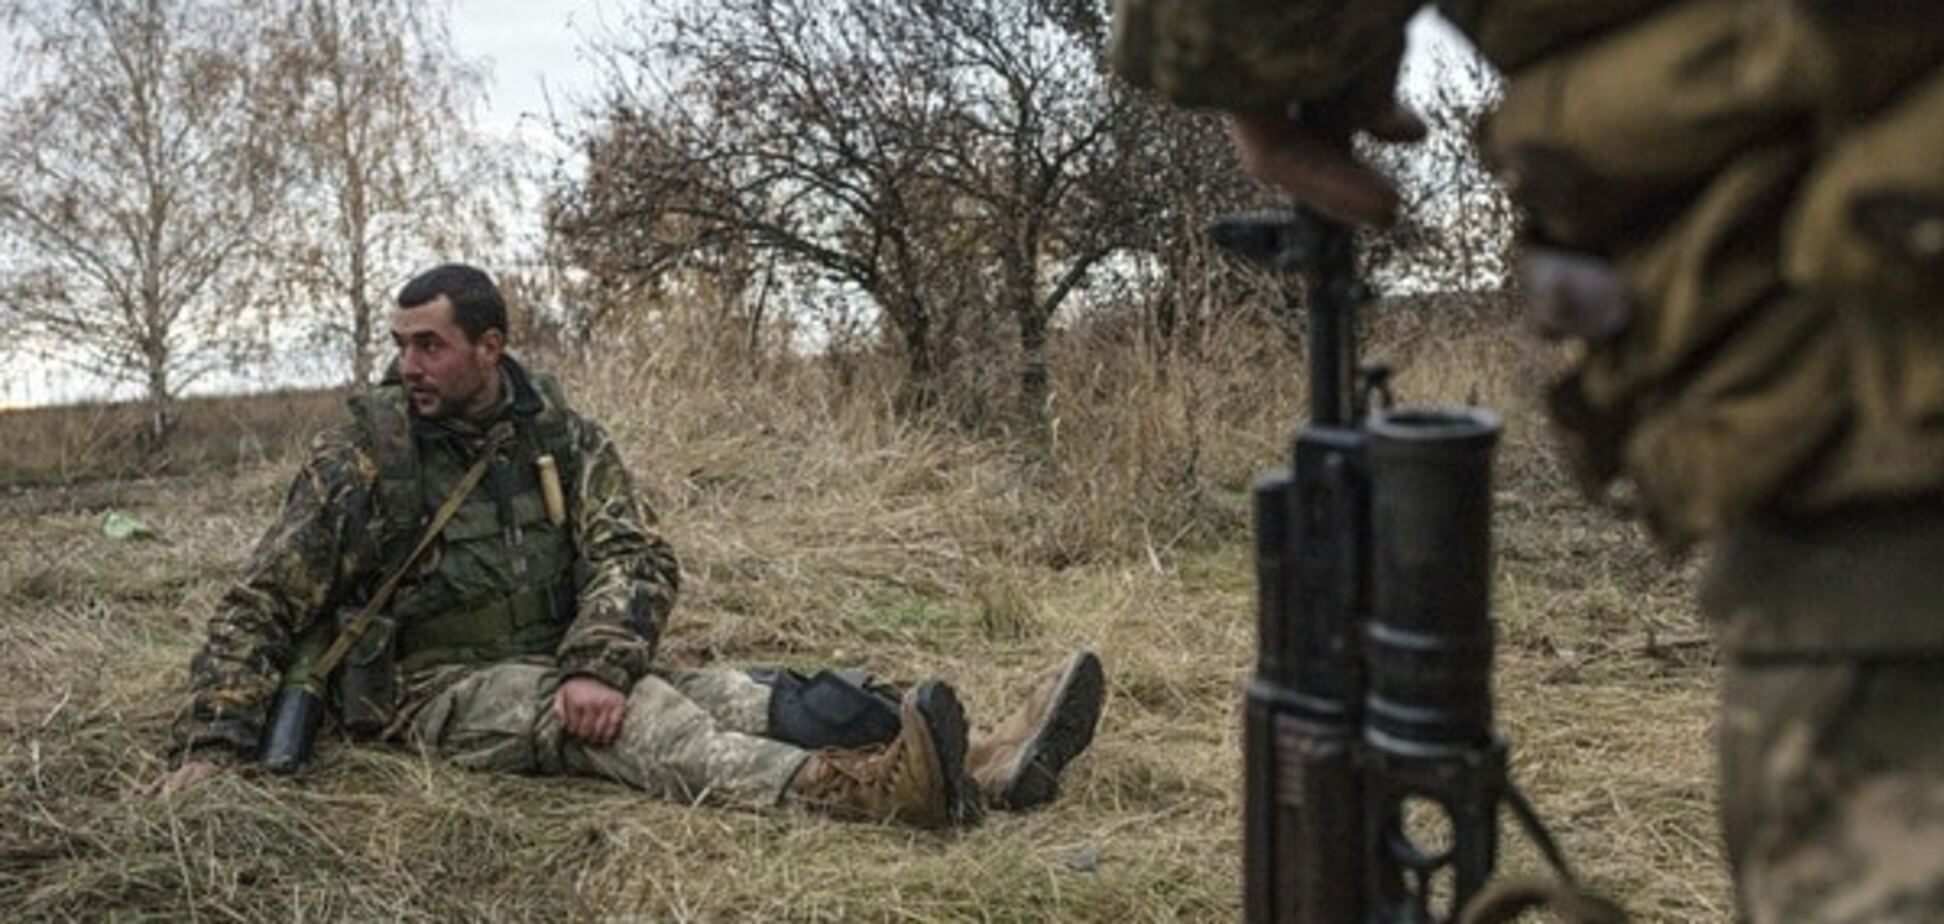 Тымчук: бойцы АТО могут освободить Донбасс за две недели